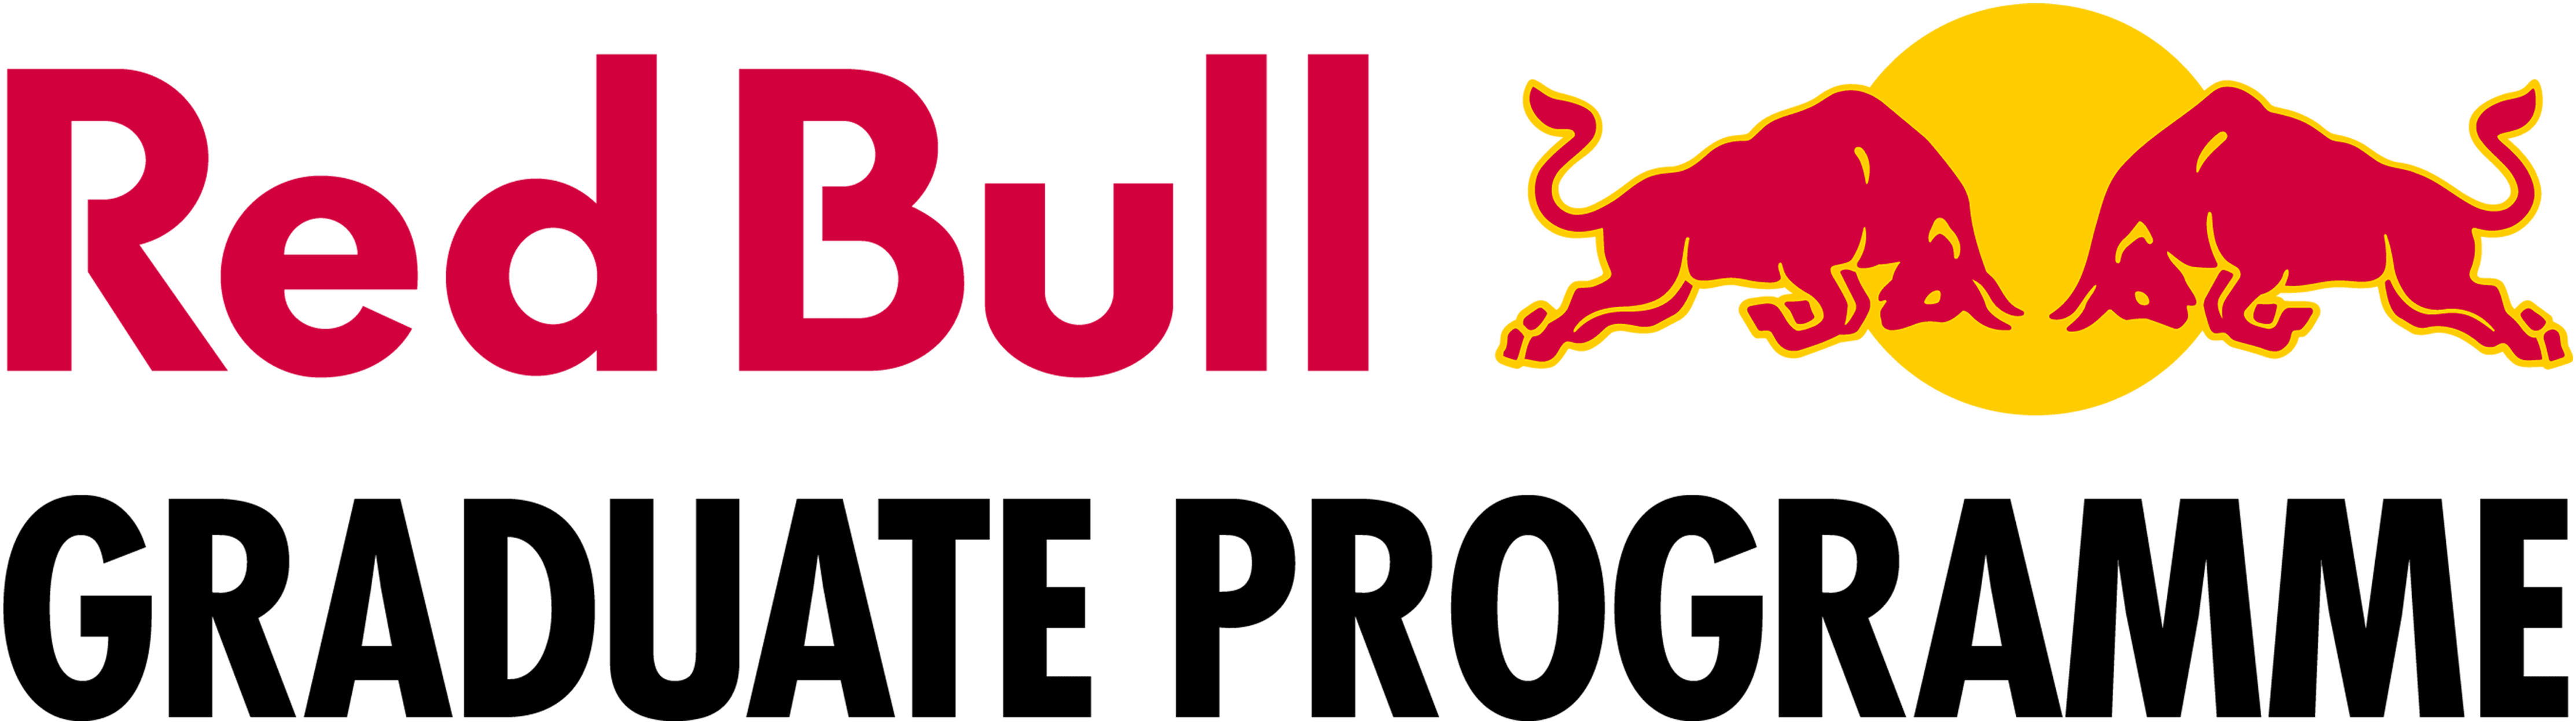 Red Bull Graduate Program Logo